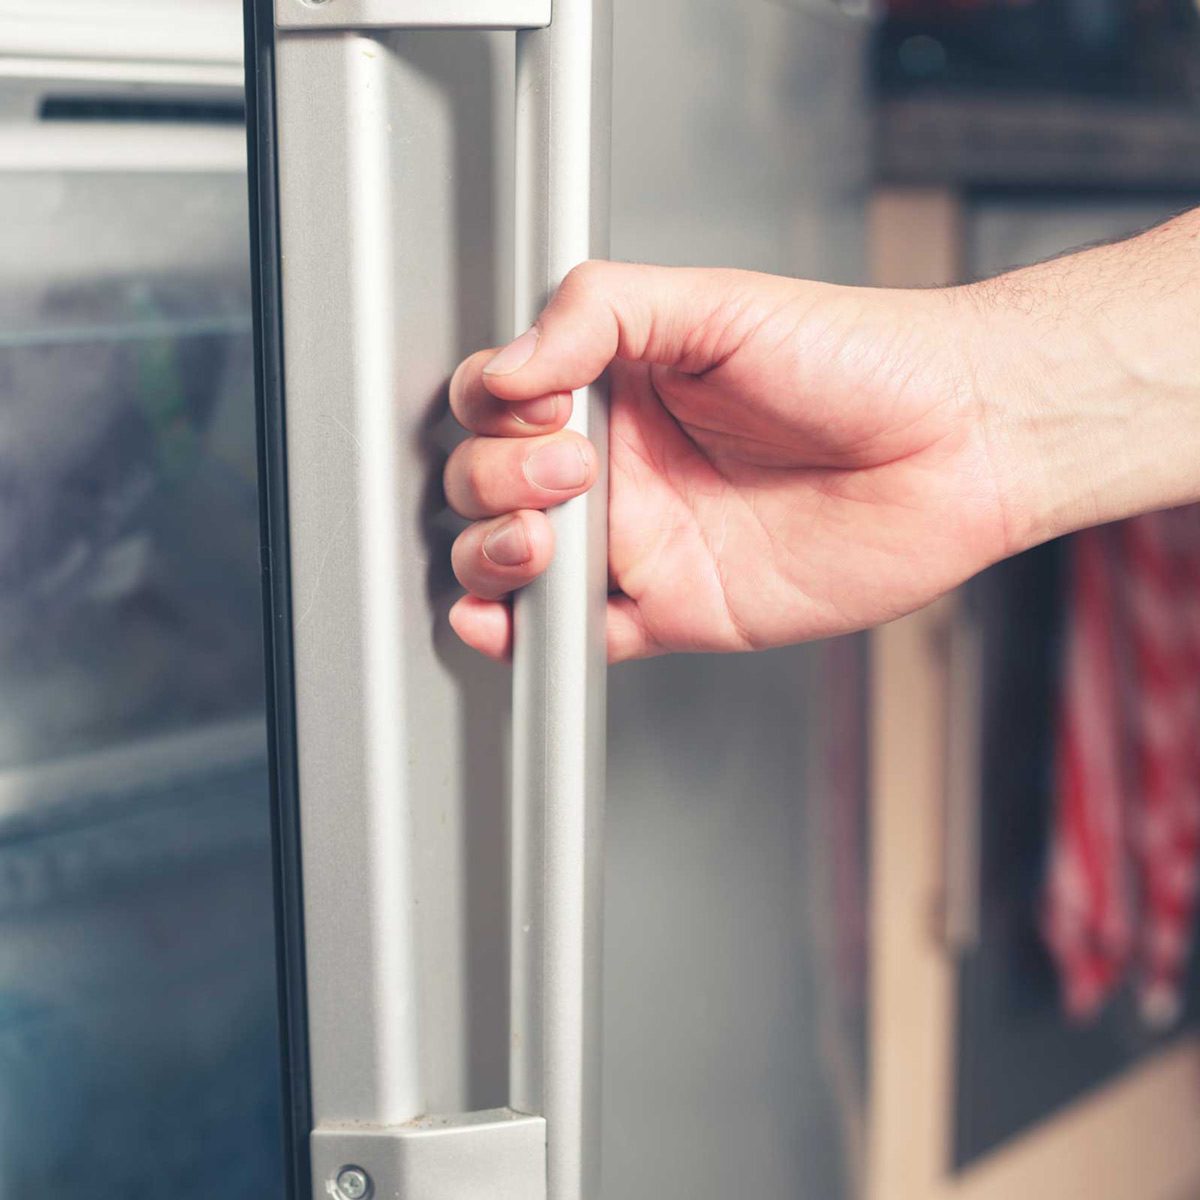 fridge handle